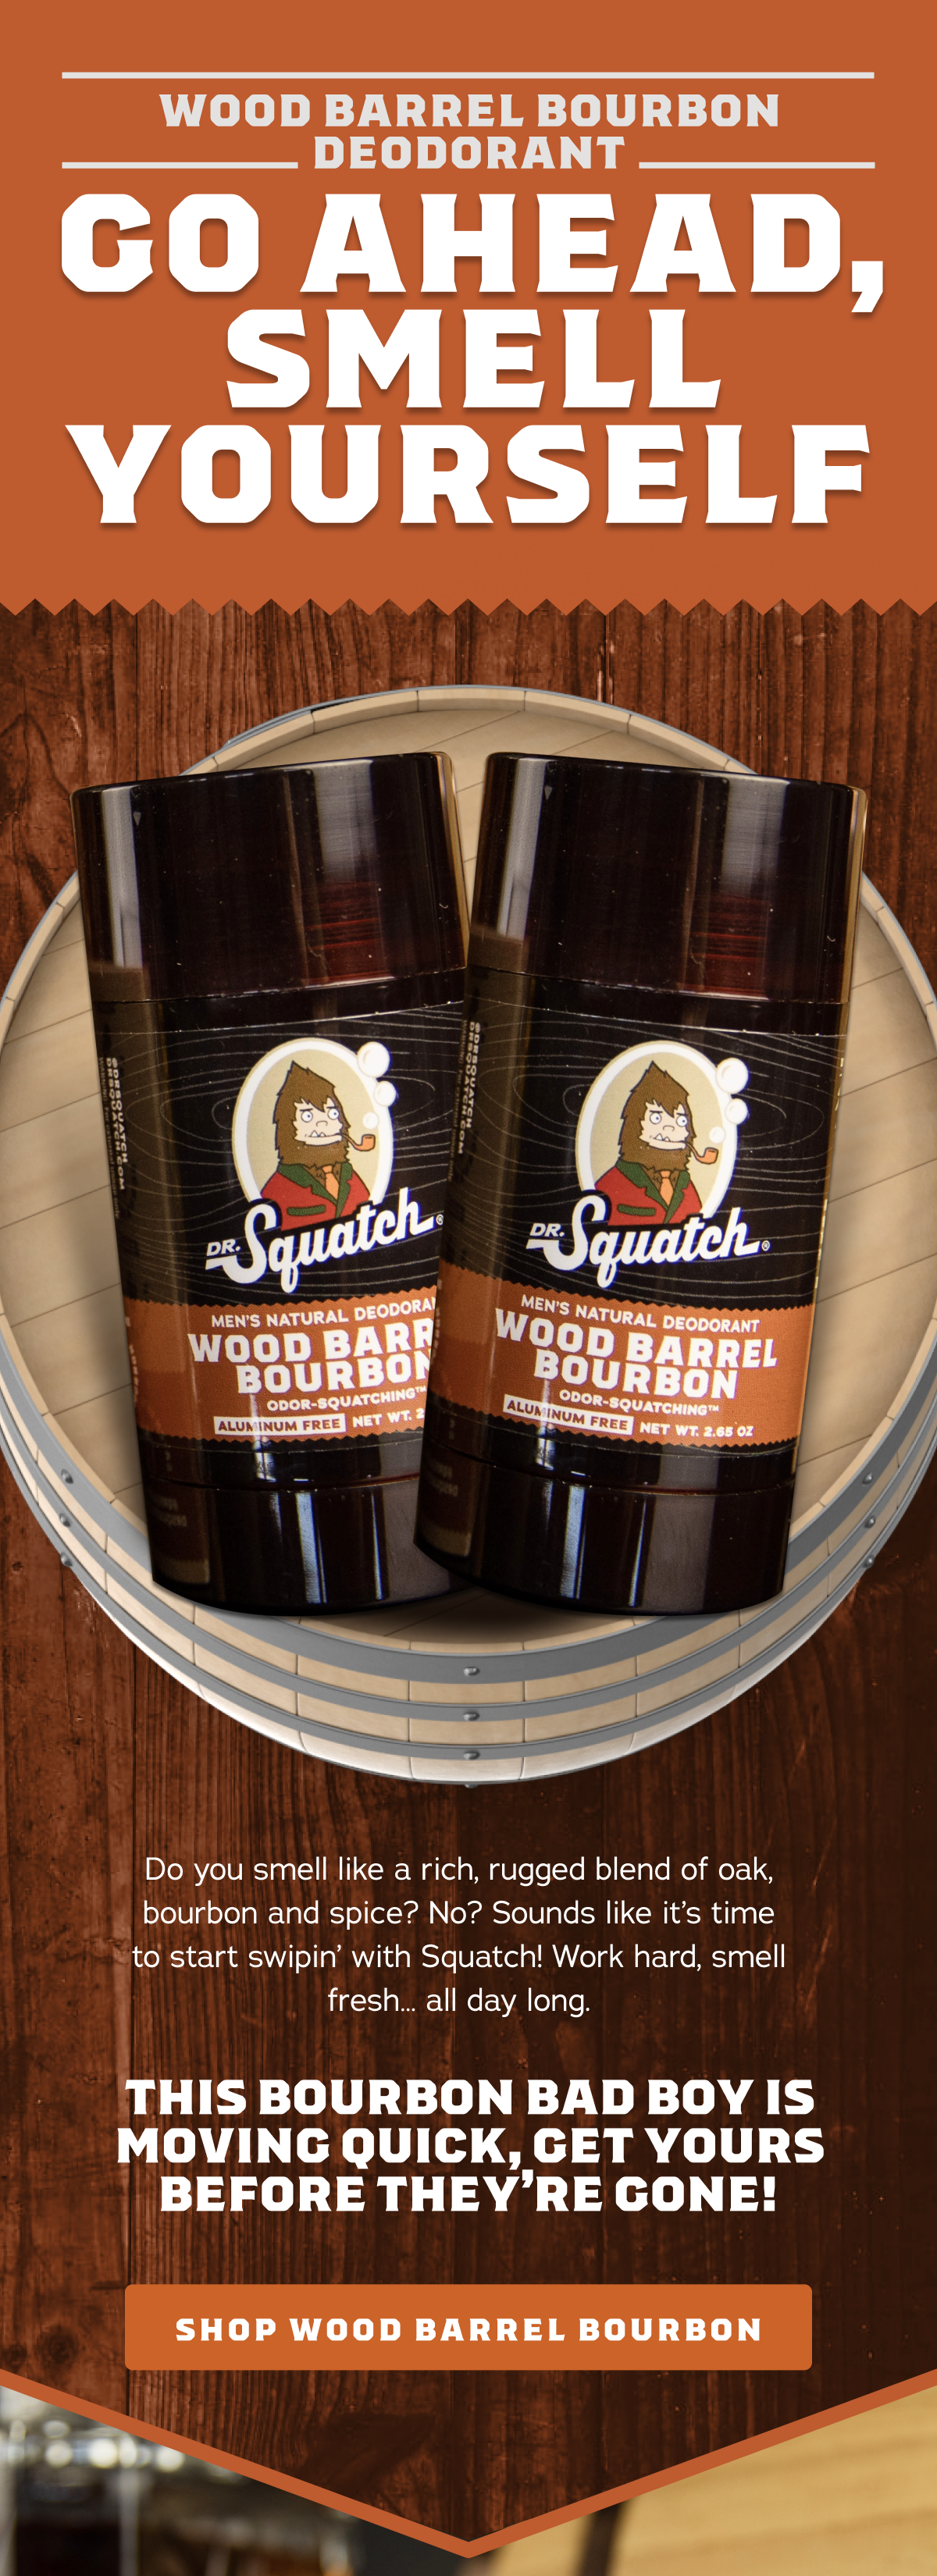 Dr. Squatch - Wood Barrel Bourbon